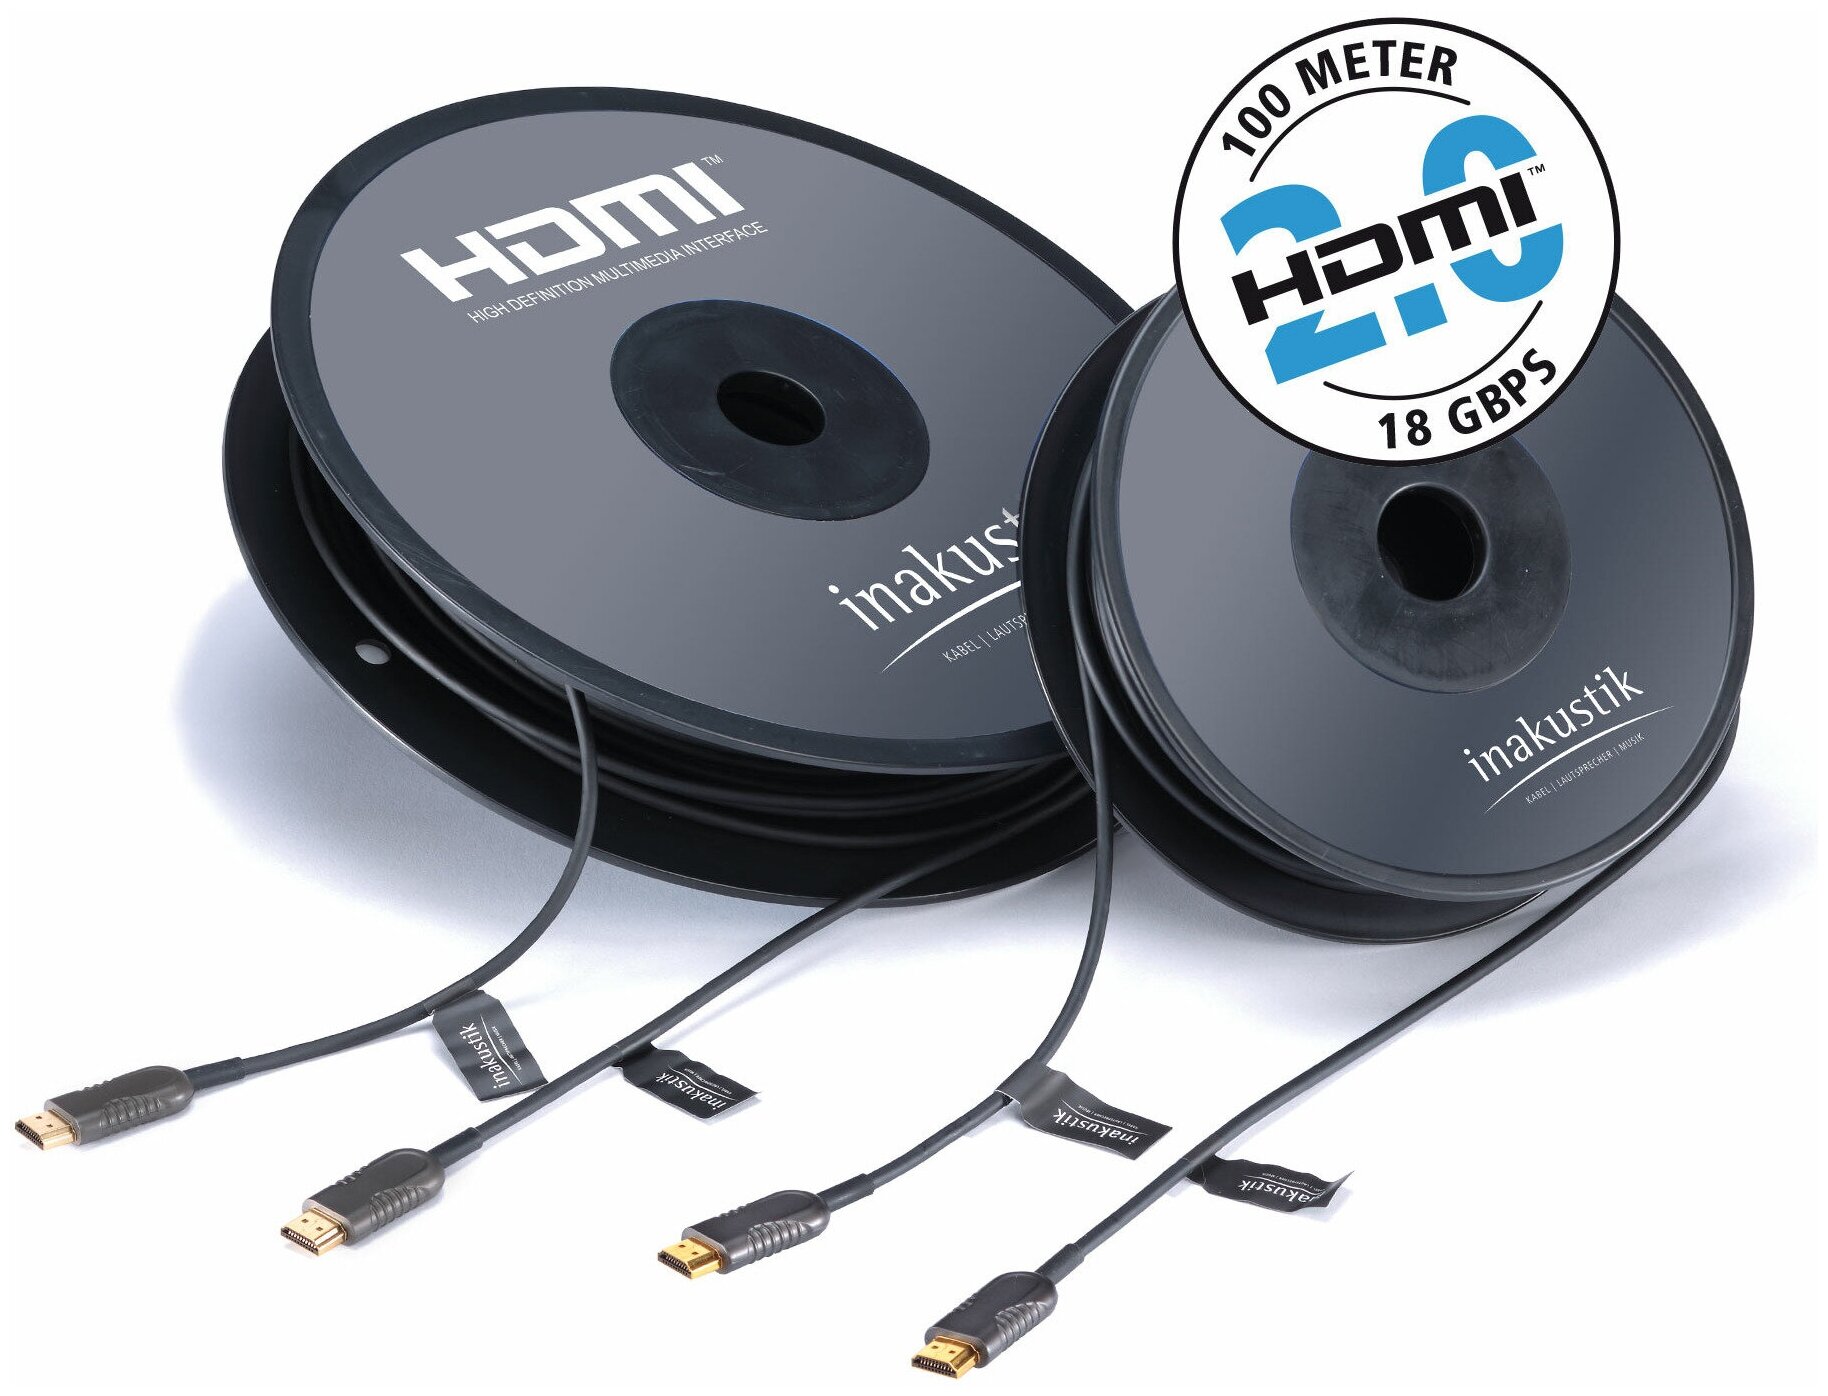 Кабель HDMI - HDMI оптоволоконные Inakustik 009241002 Profi 2.0a Optical Fiber Cable 2.0m